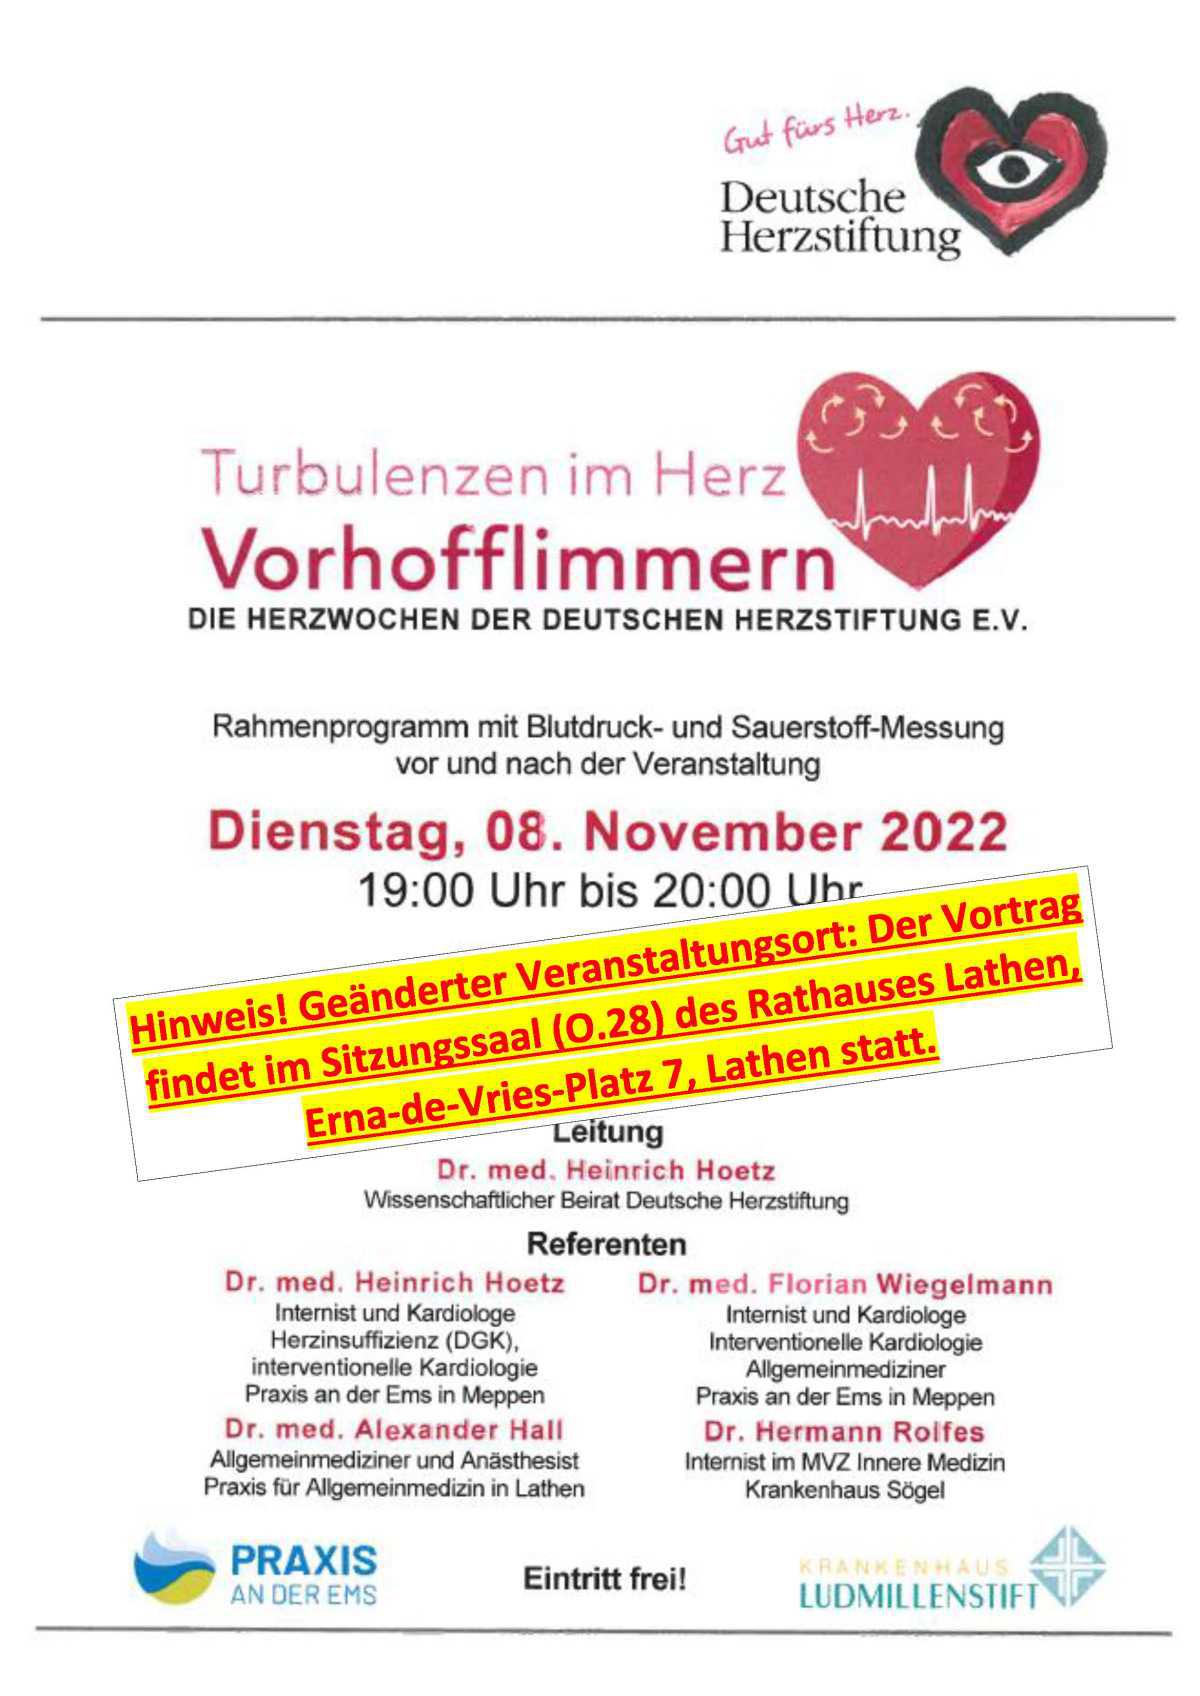 Turbulenzen im Herz - Vorhofflimmern - mit Rahmenprogramm am 08.11.22